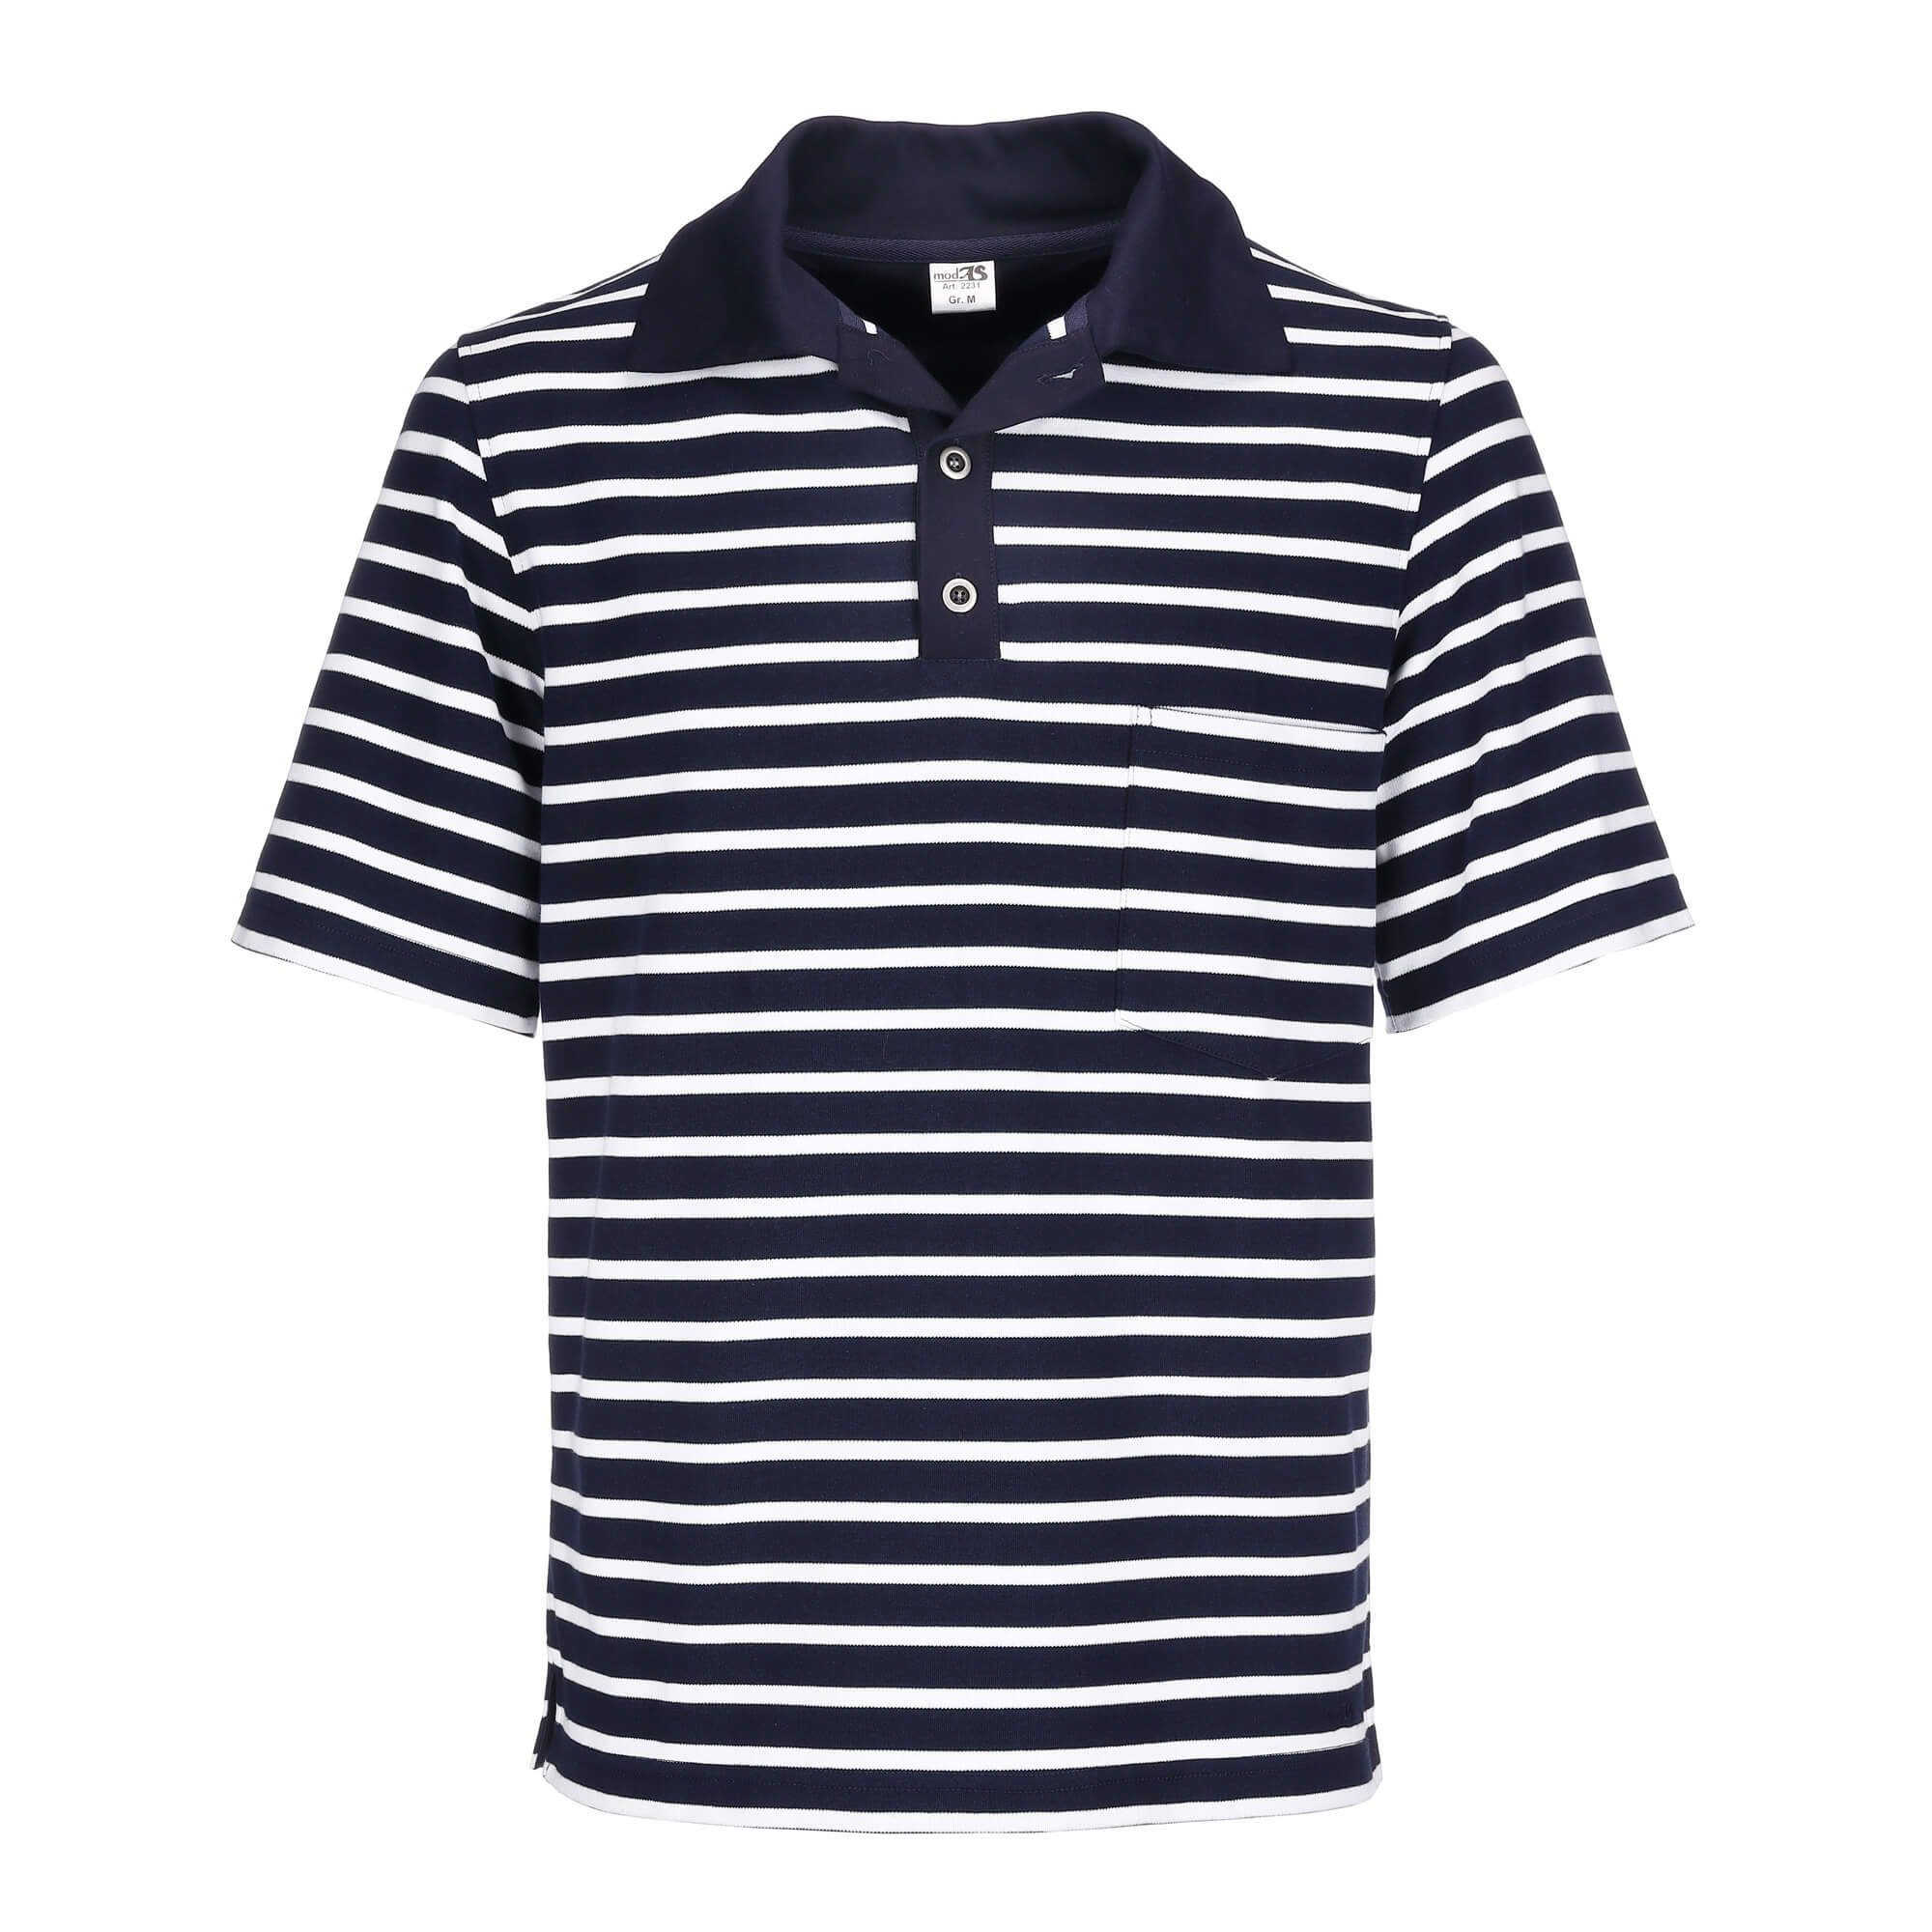 modAS Poloshirt Herren T-Shirt mit Knopfleiste mit 3 Metall-Knöpfen und Brusttasche (05) blau / weiß